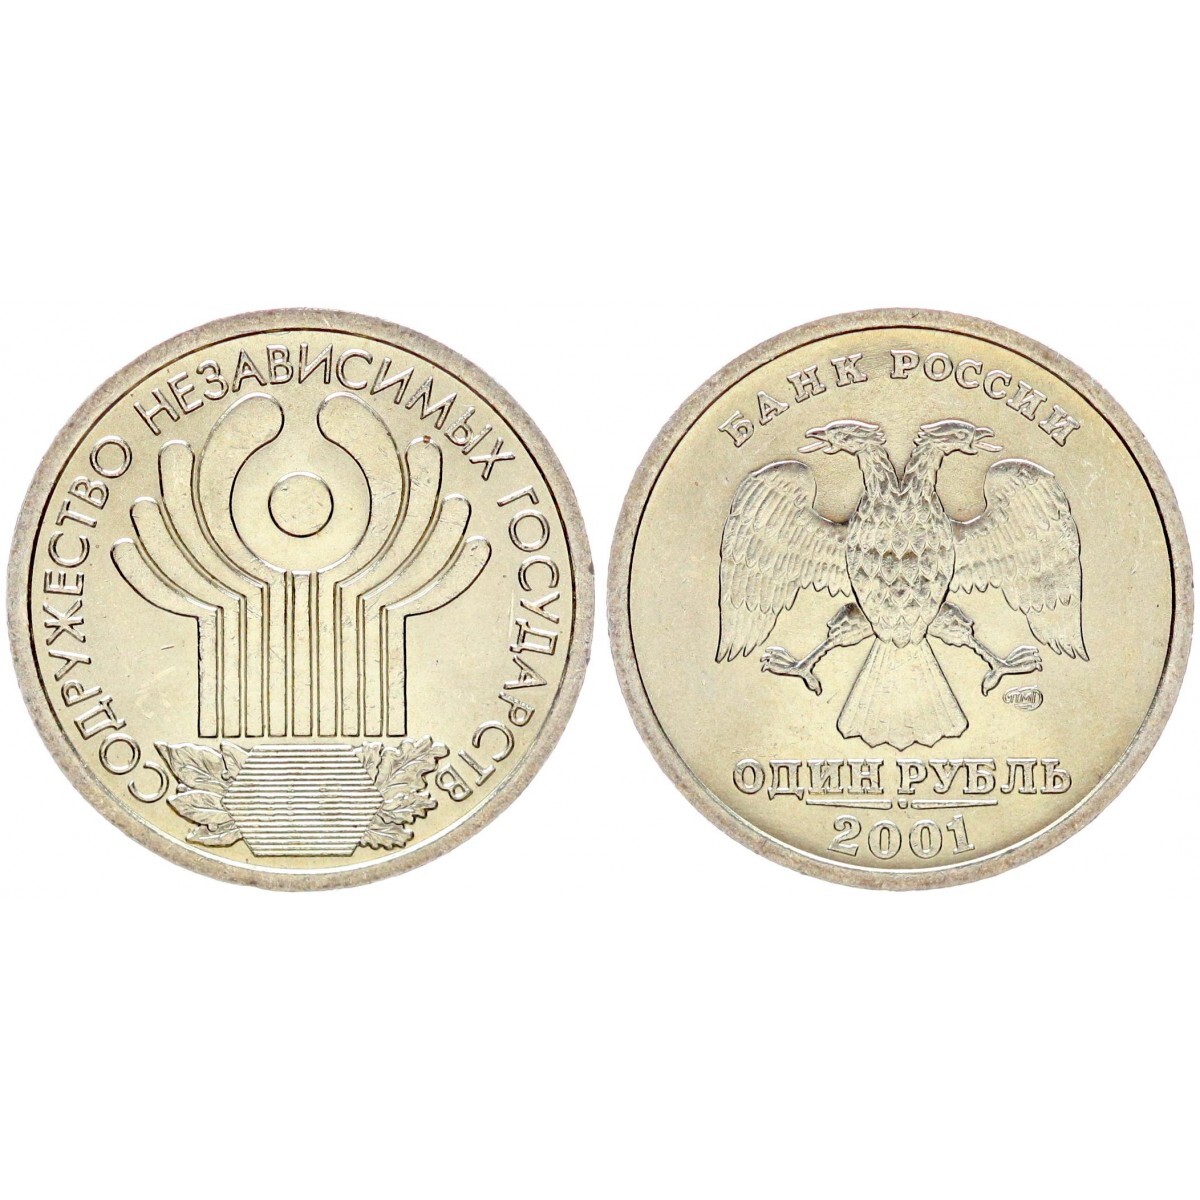 5 рублей 2001